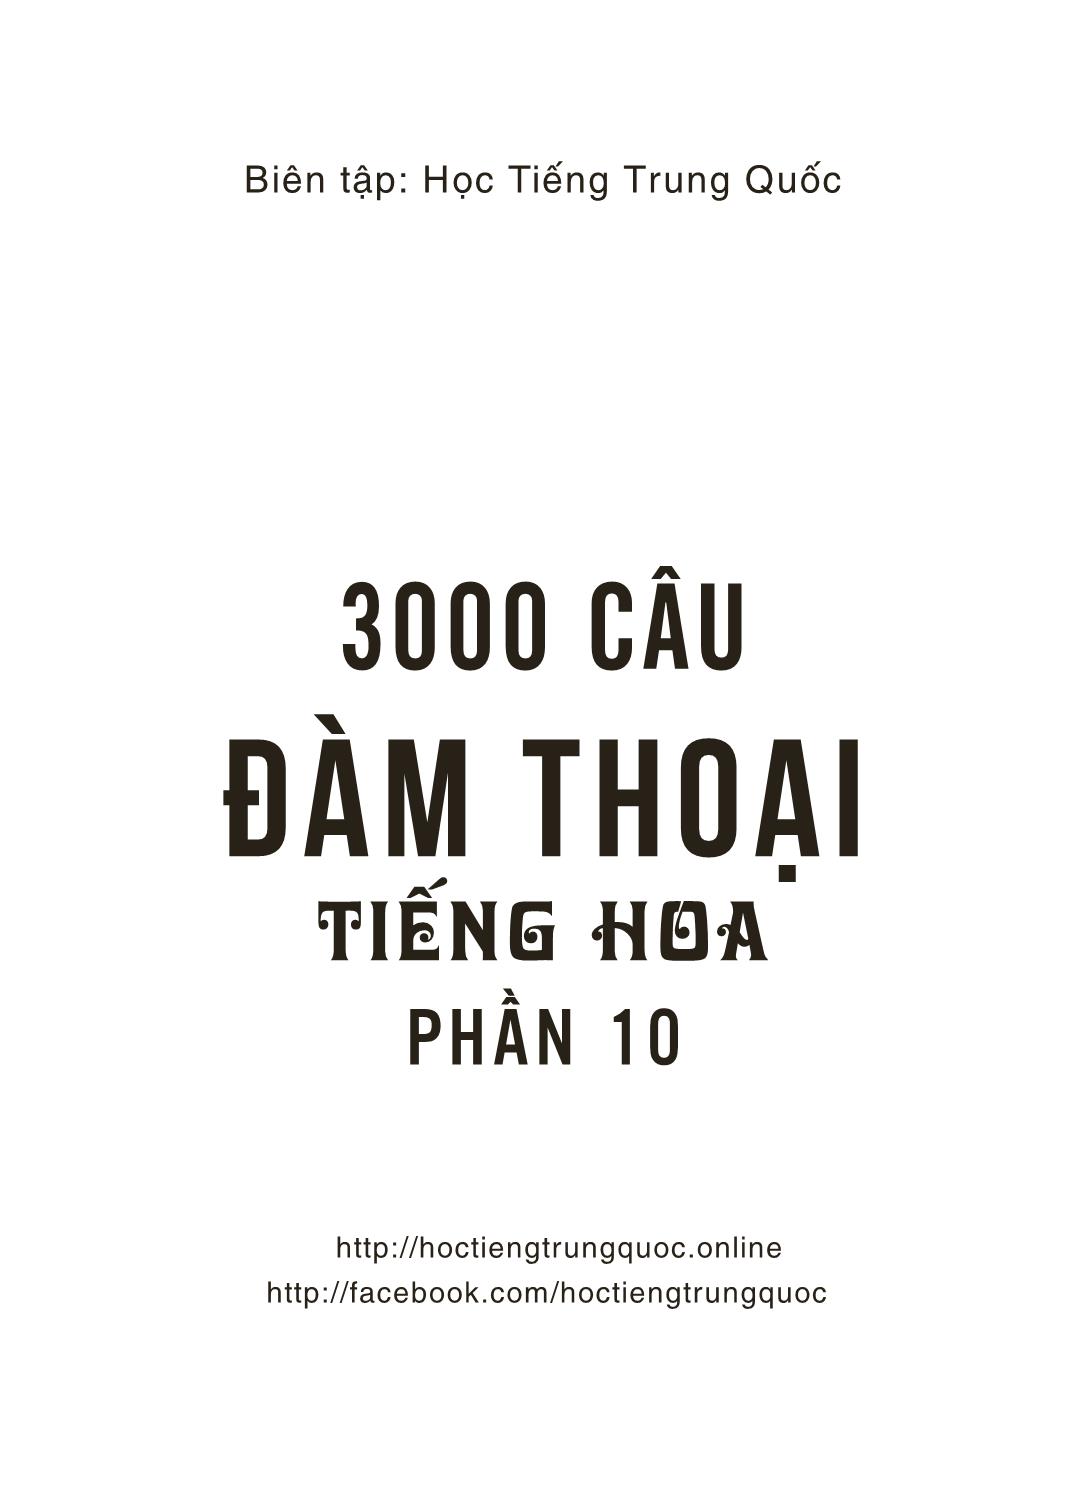 3000 Câu đàm thoại tiếng Hoa - Phần 10 trang 2